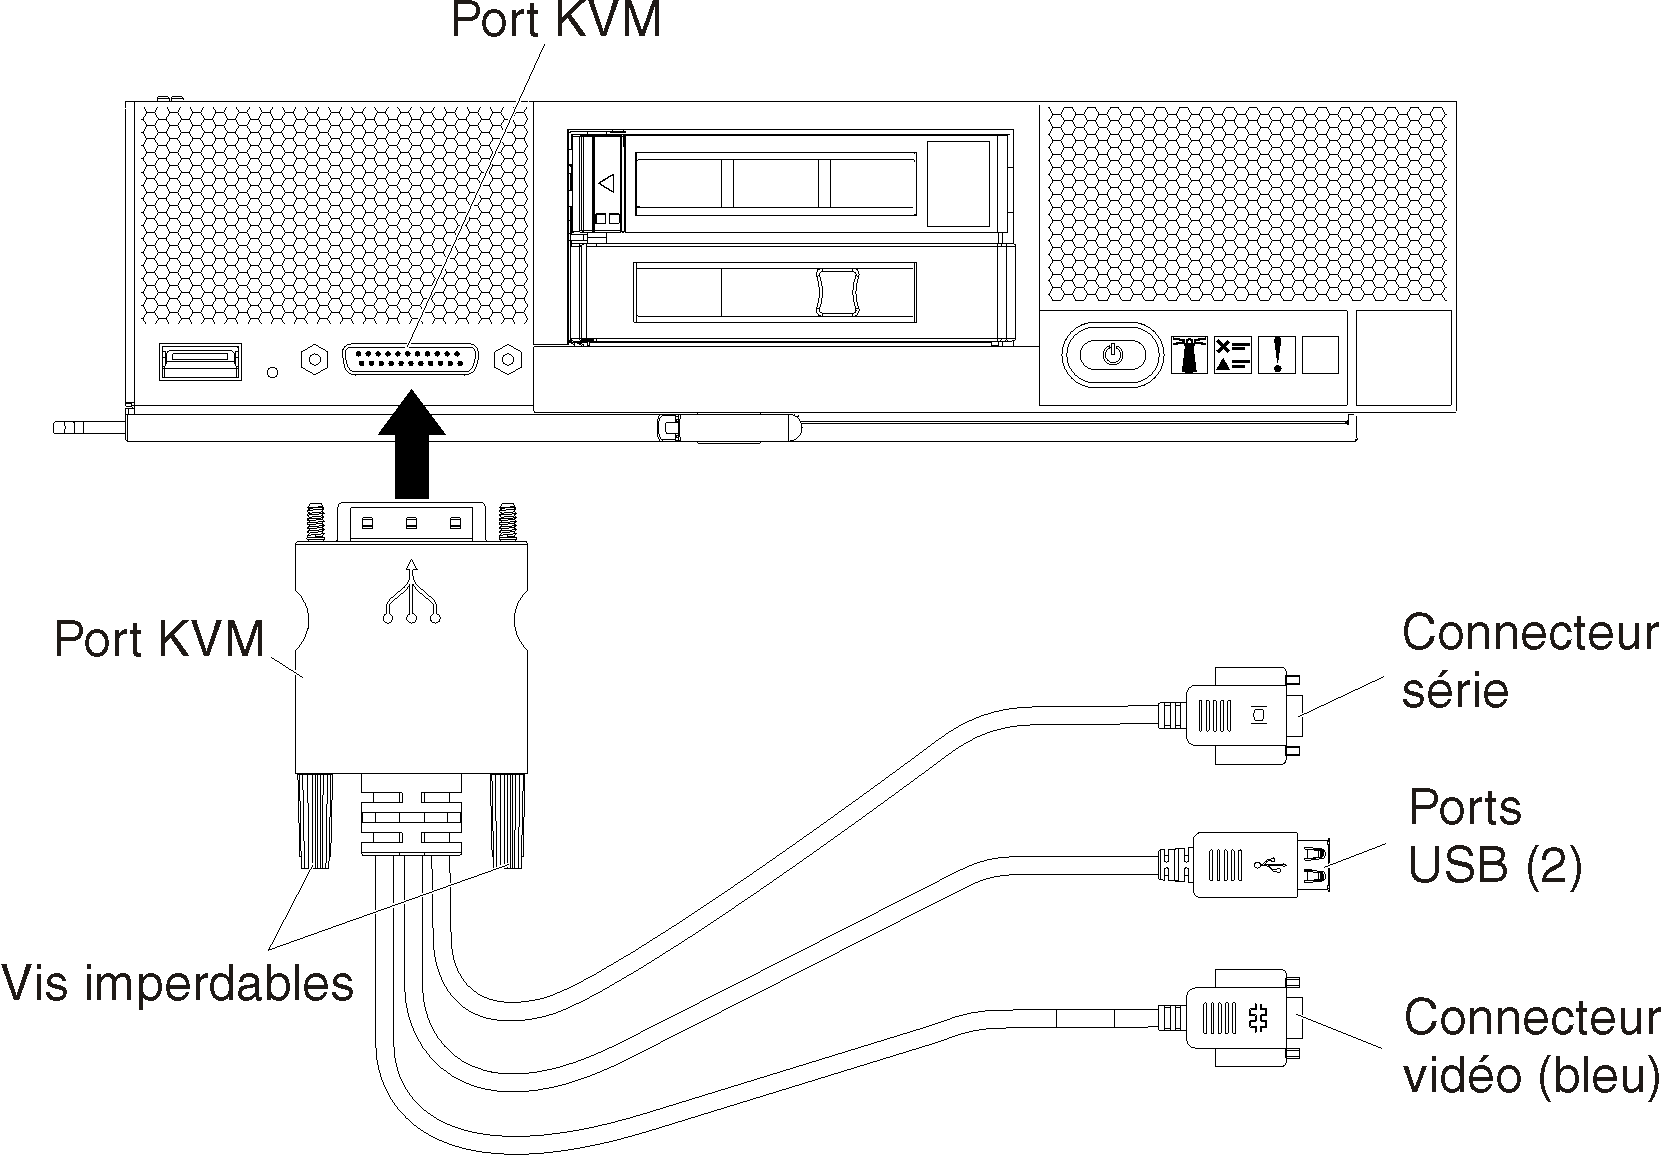 Illustre le câble d'interface se connectant à un nœud de traitement